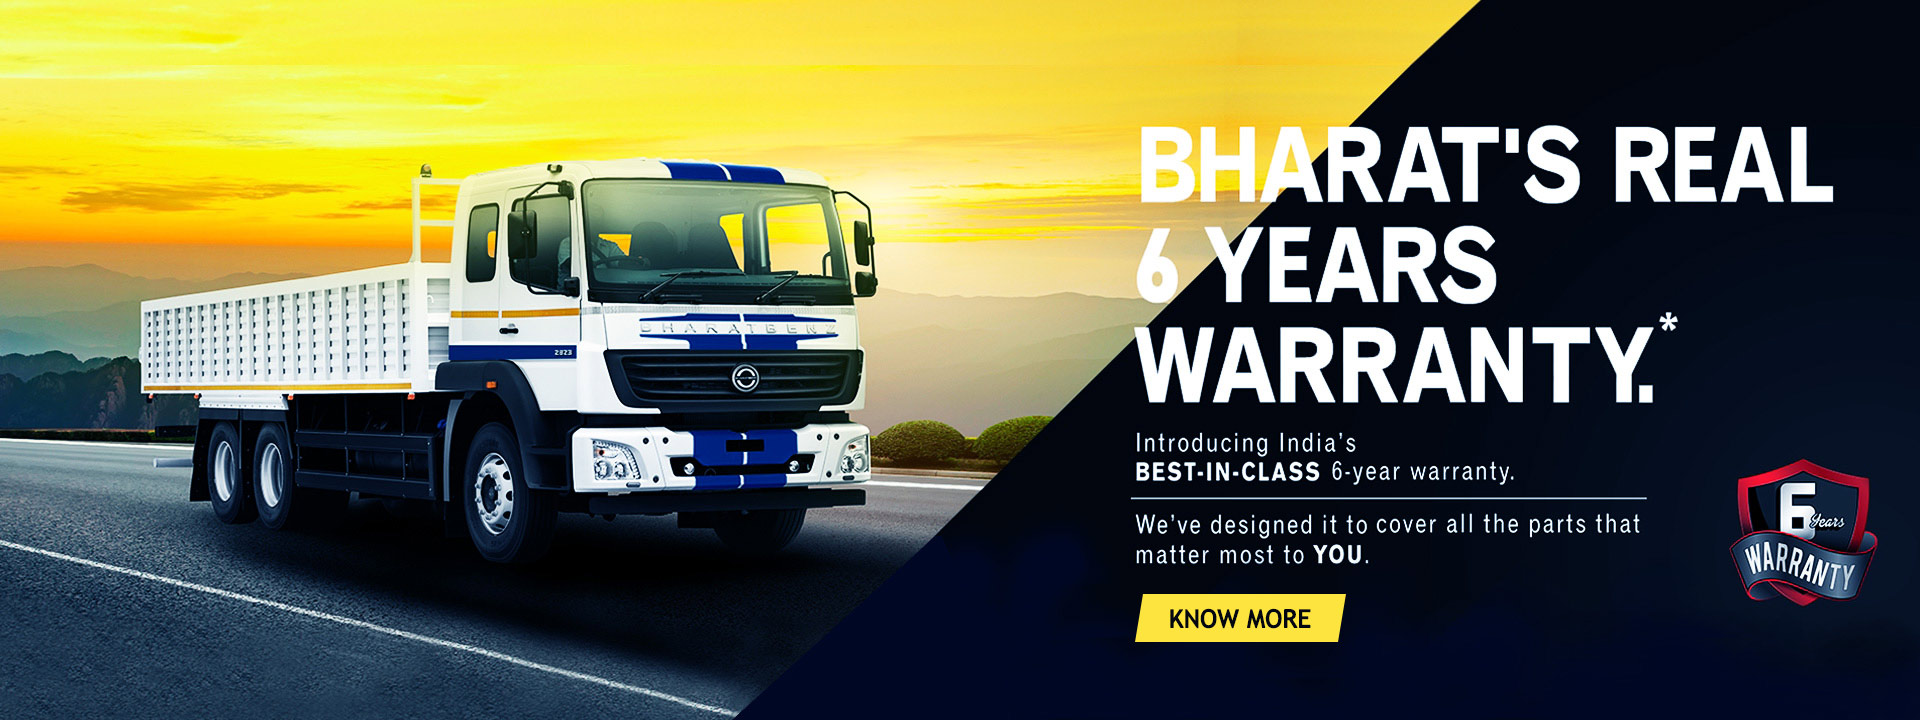 BharathBenz 6 years Warranty offer